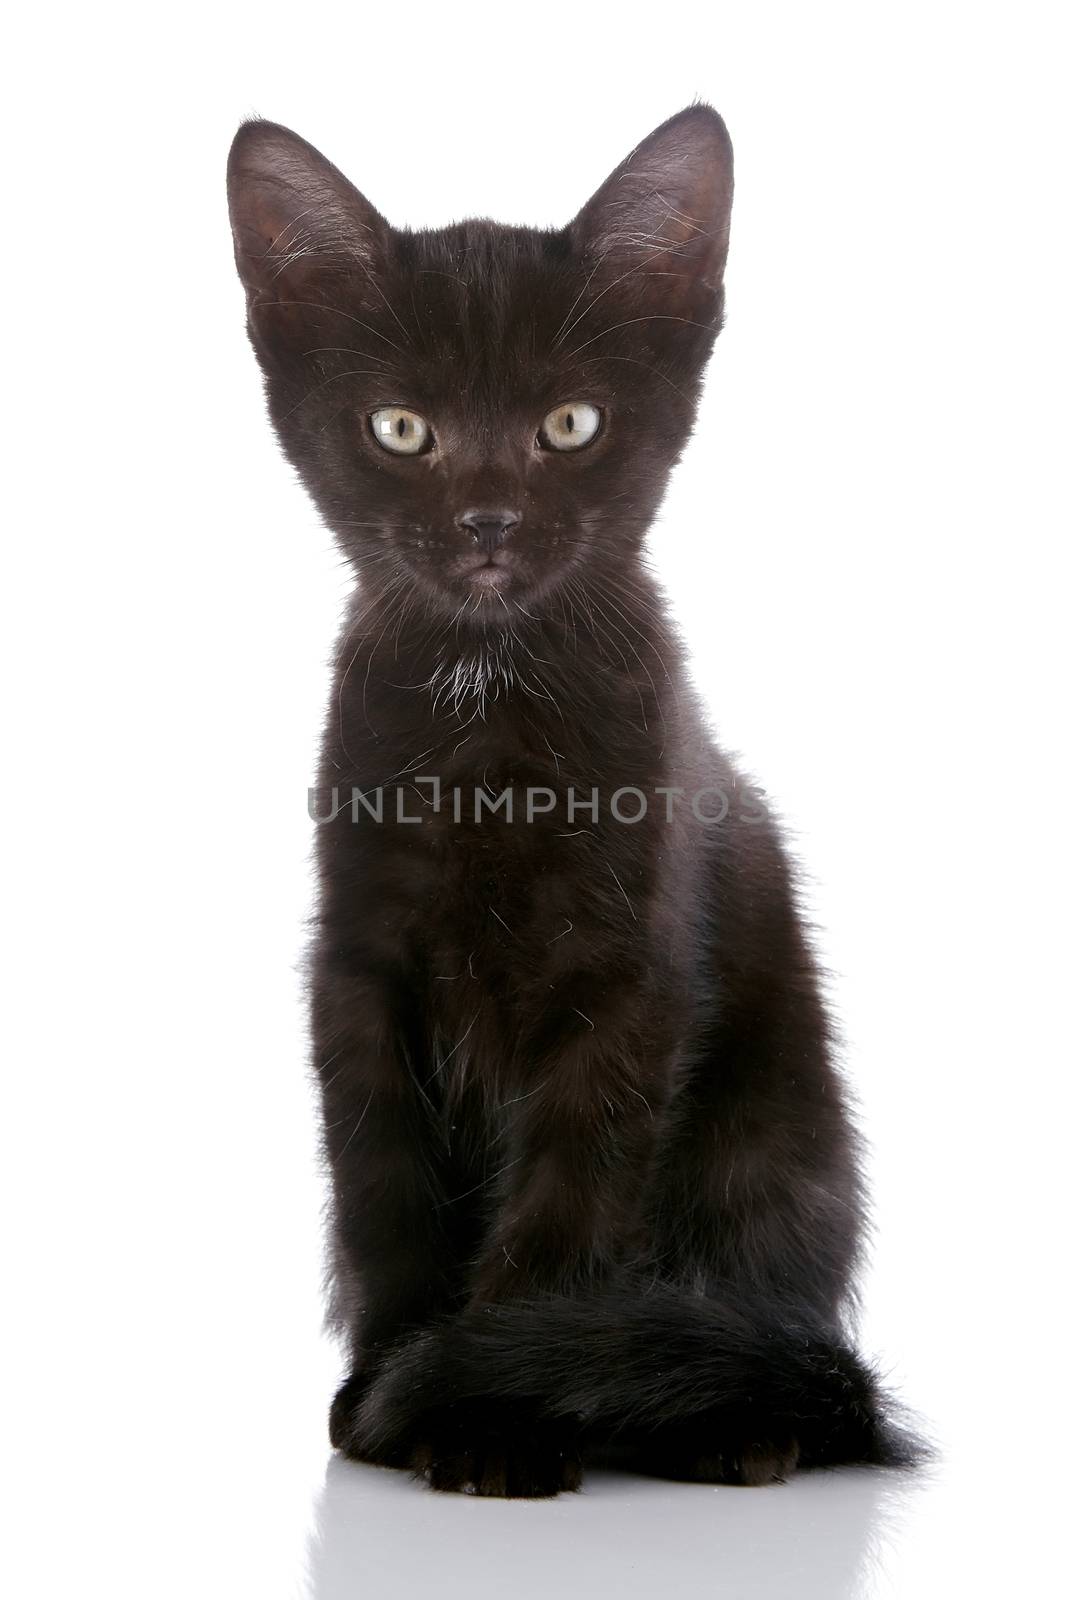 The black kitten. by Azaliya